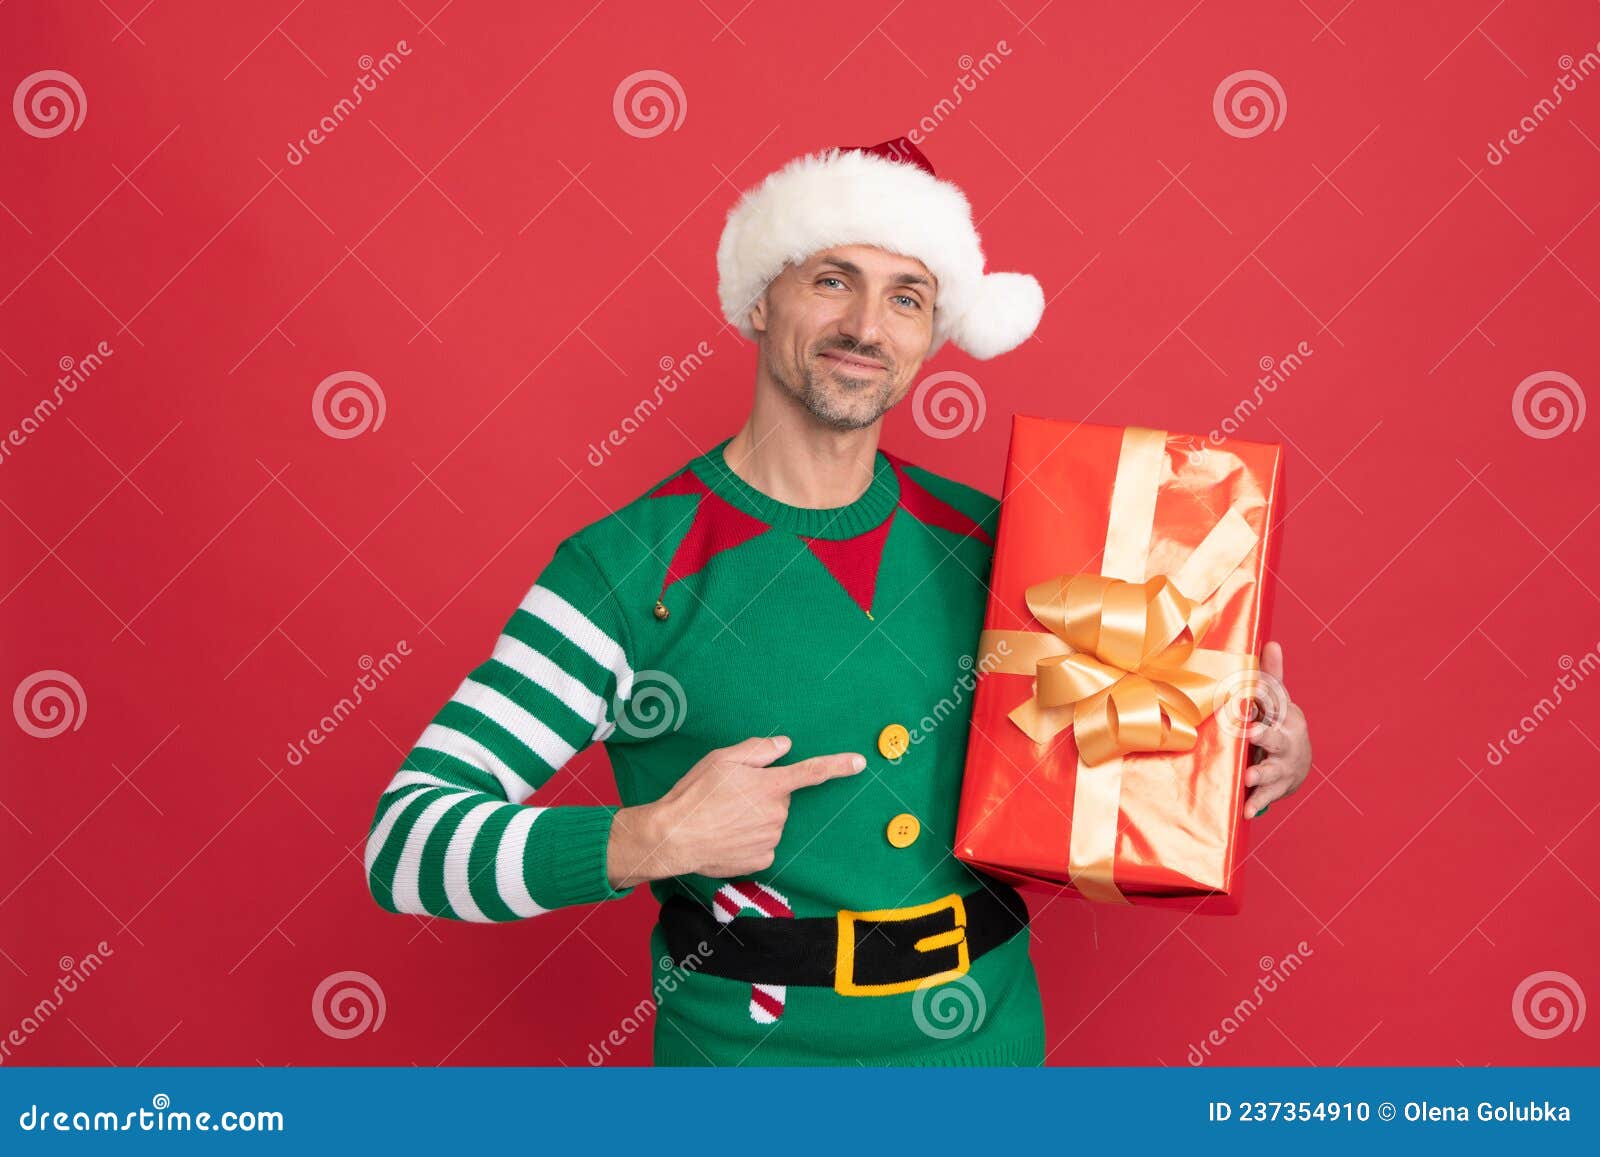 Año Nuevo Feliz. Regalo De Navidad. Hombre Feliz Disfrazado De Elfo Y  Sombrero De Santa Claus. Foto de archivo - Imagen de navidad, emocional:  237354910